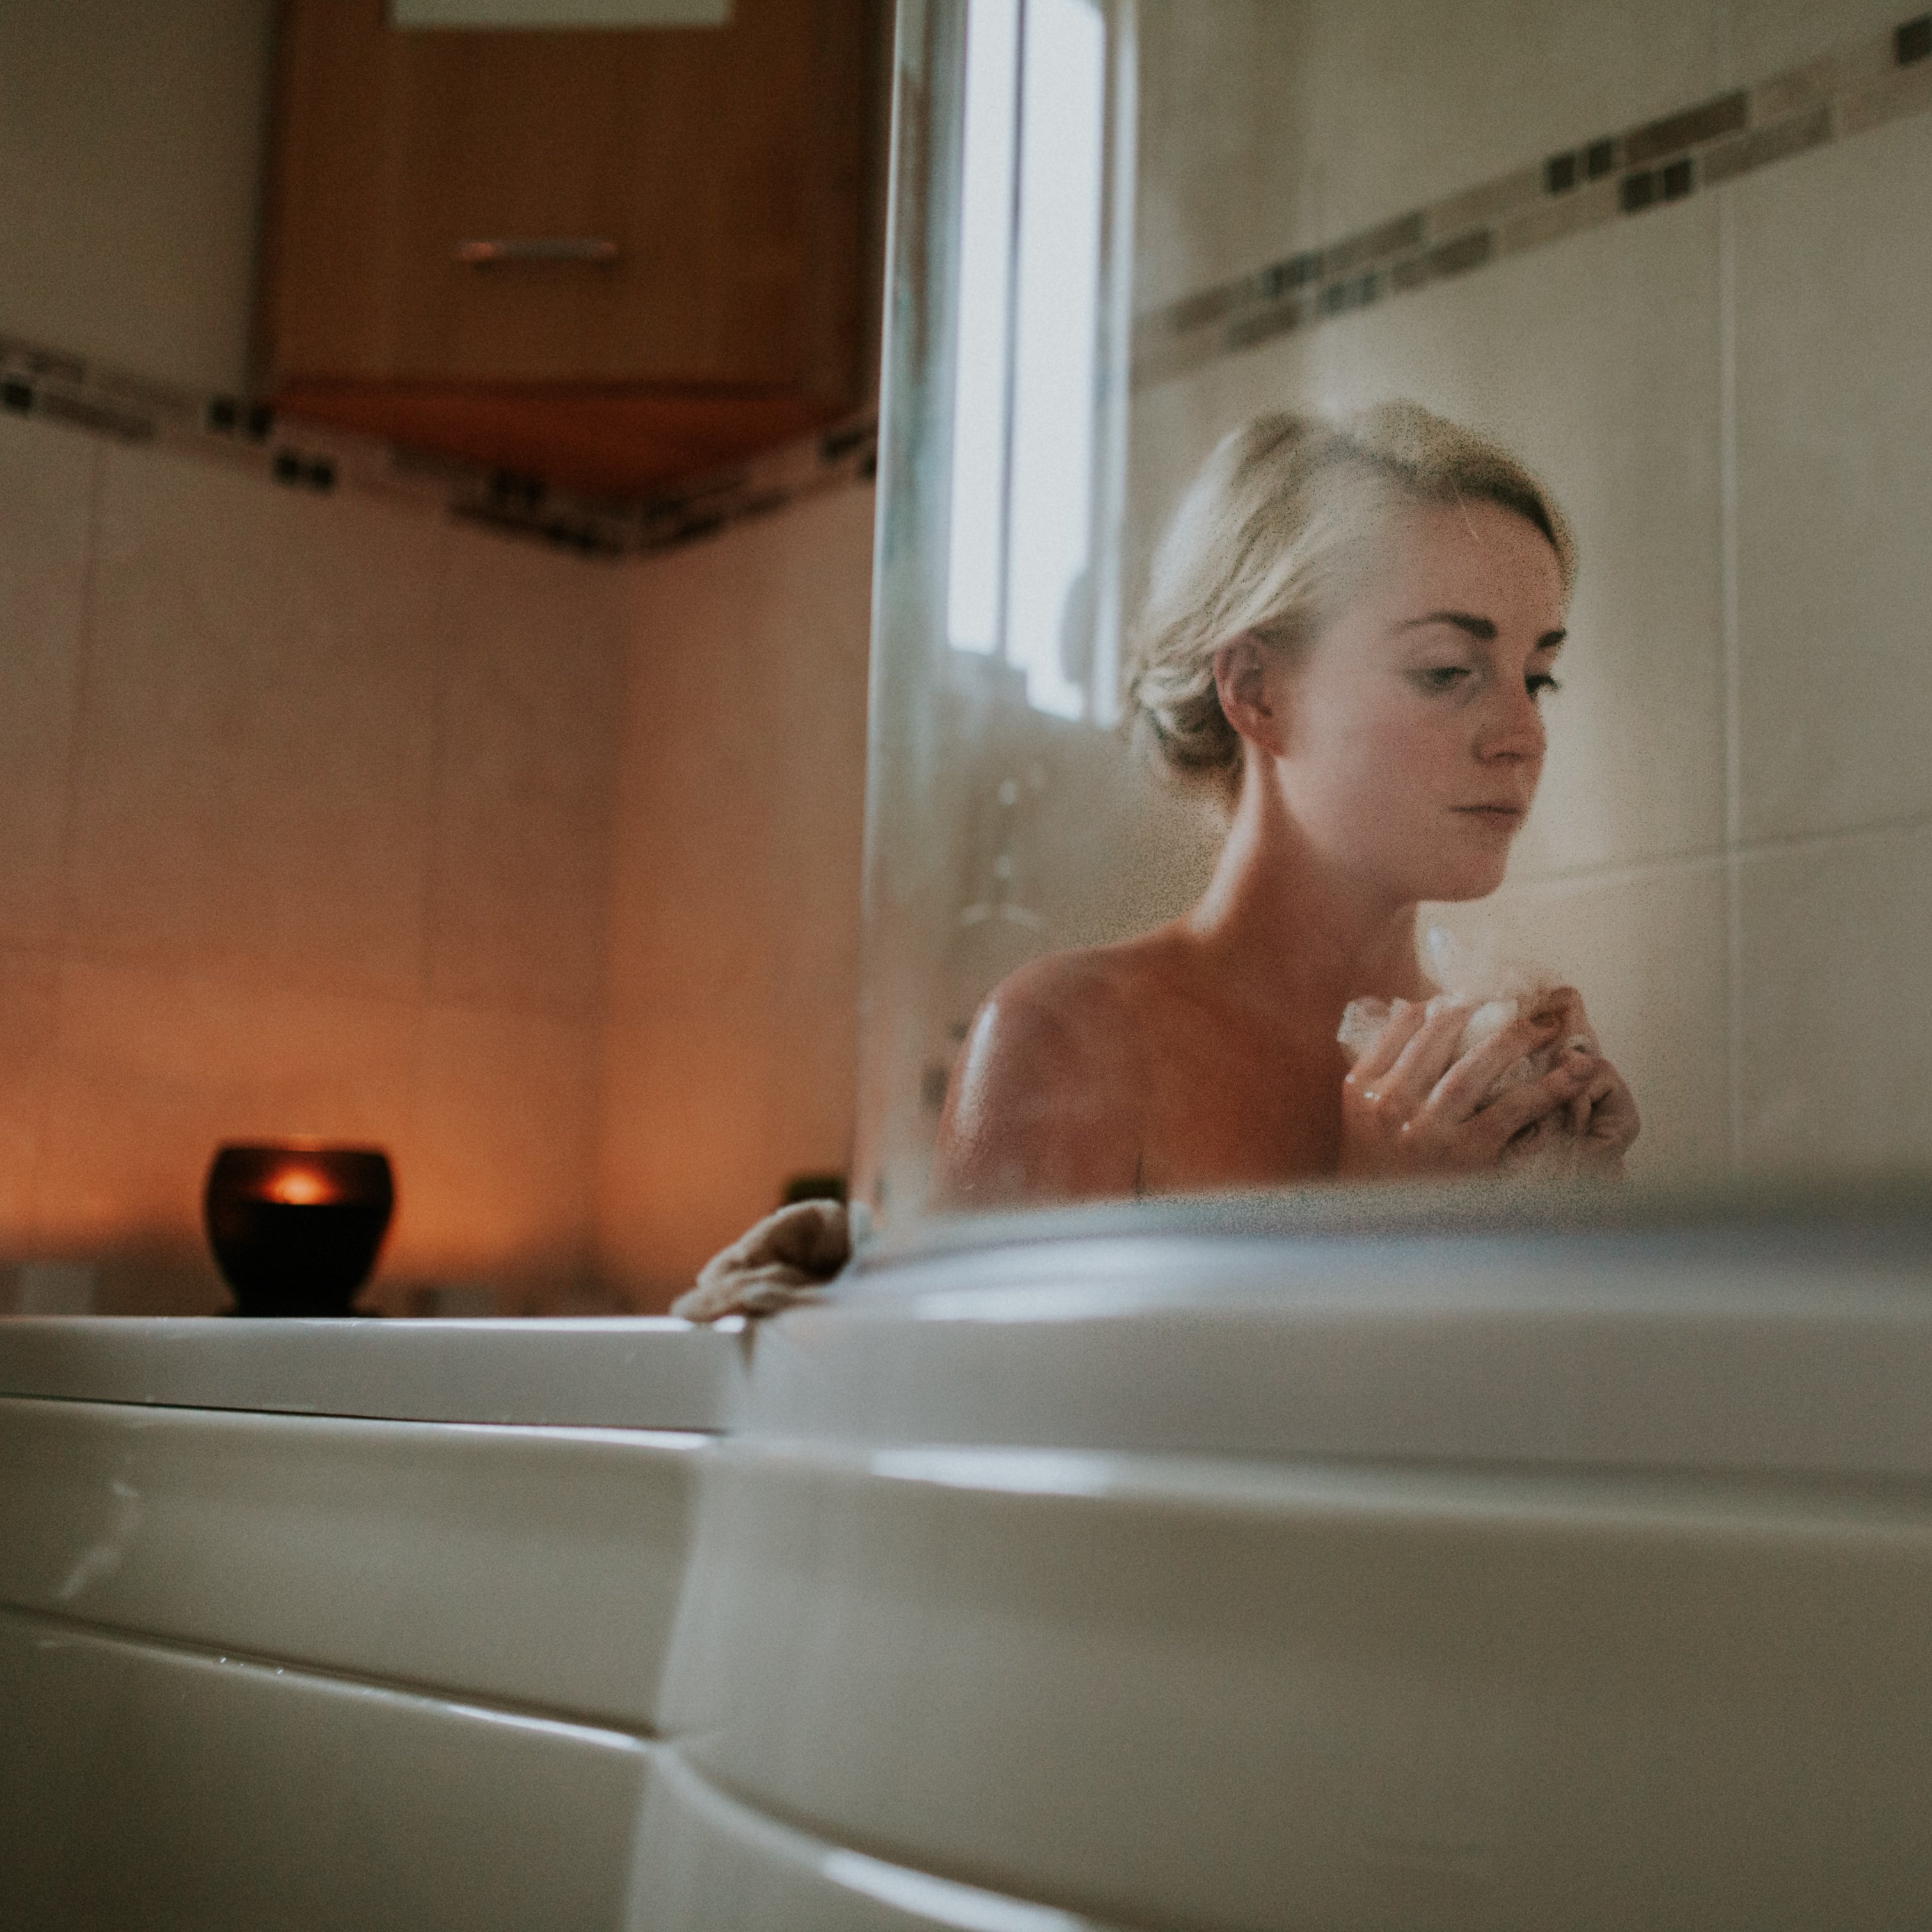 Els banys calents són recomanables per a la millora de diverses malalties